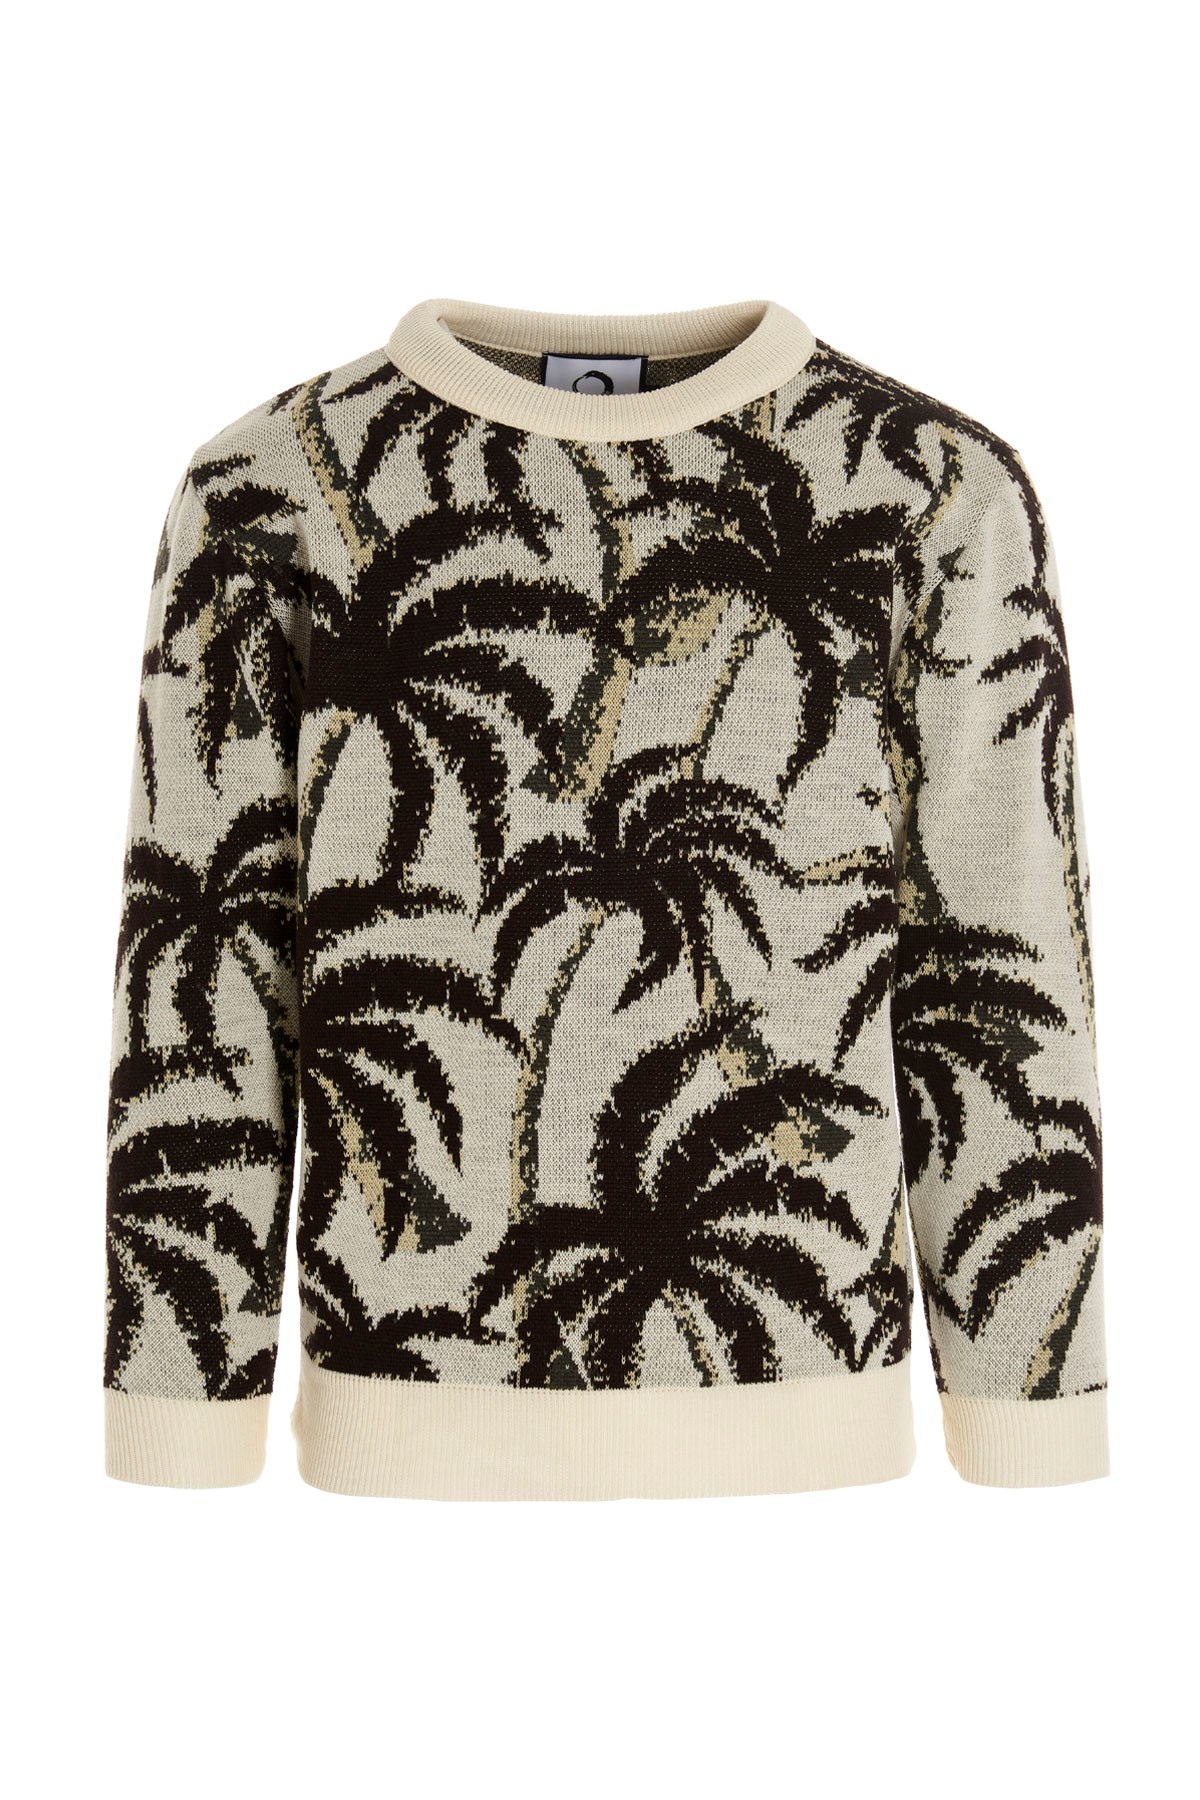 ENDLESS JOY 'Palm’ Sweater